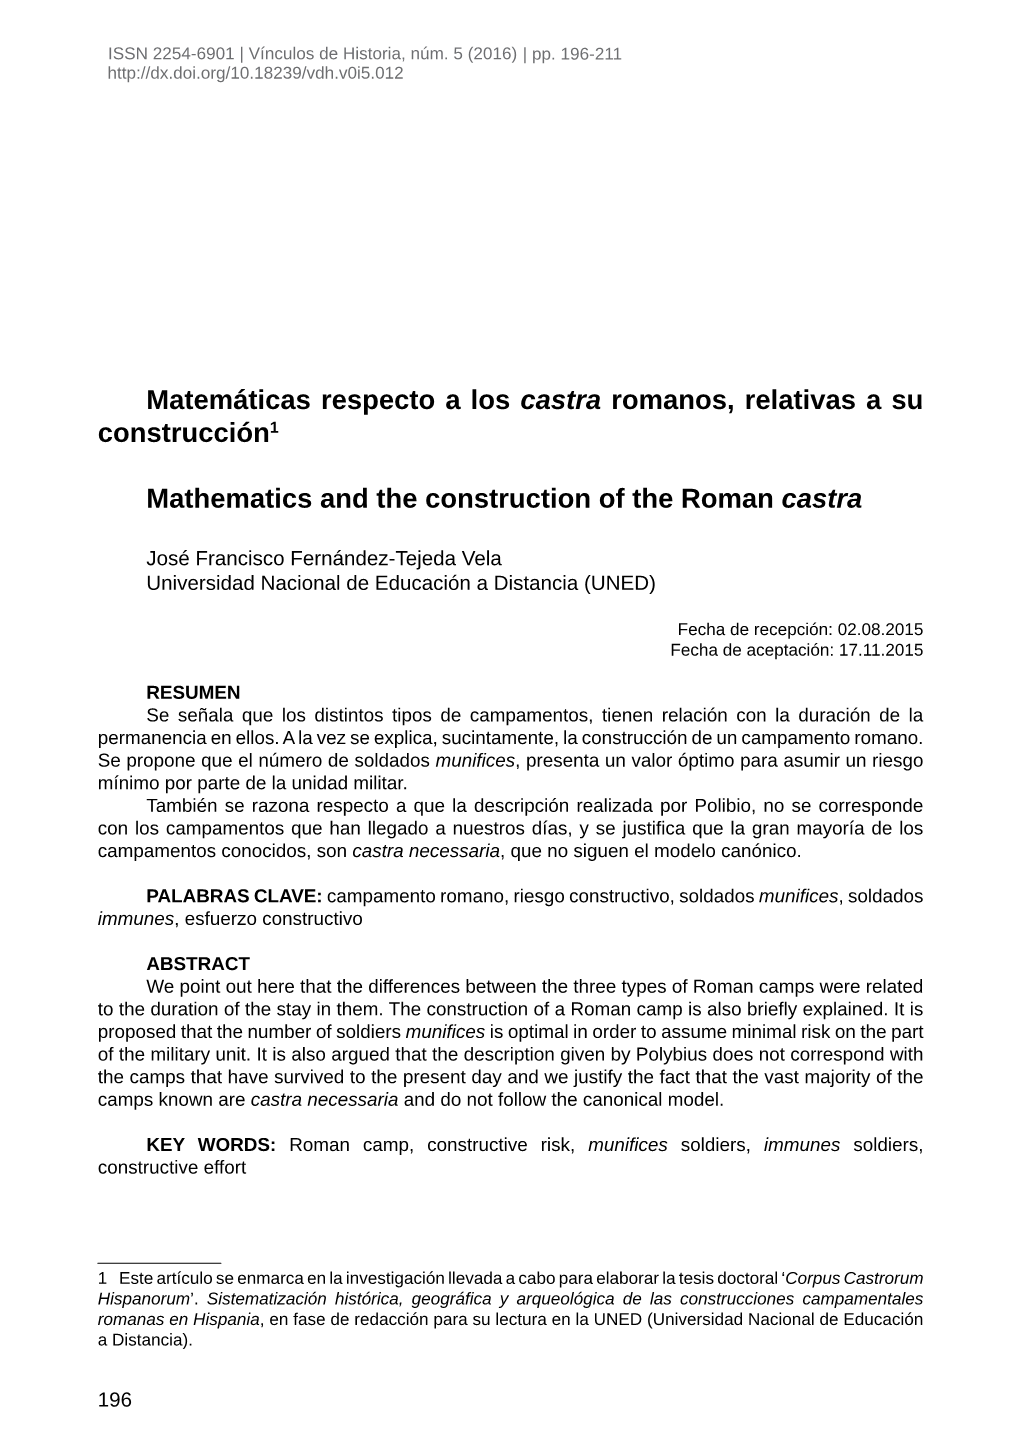 Matemáticas Respecto a Los Castra Romanos, Relativas a Su Construcción1